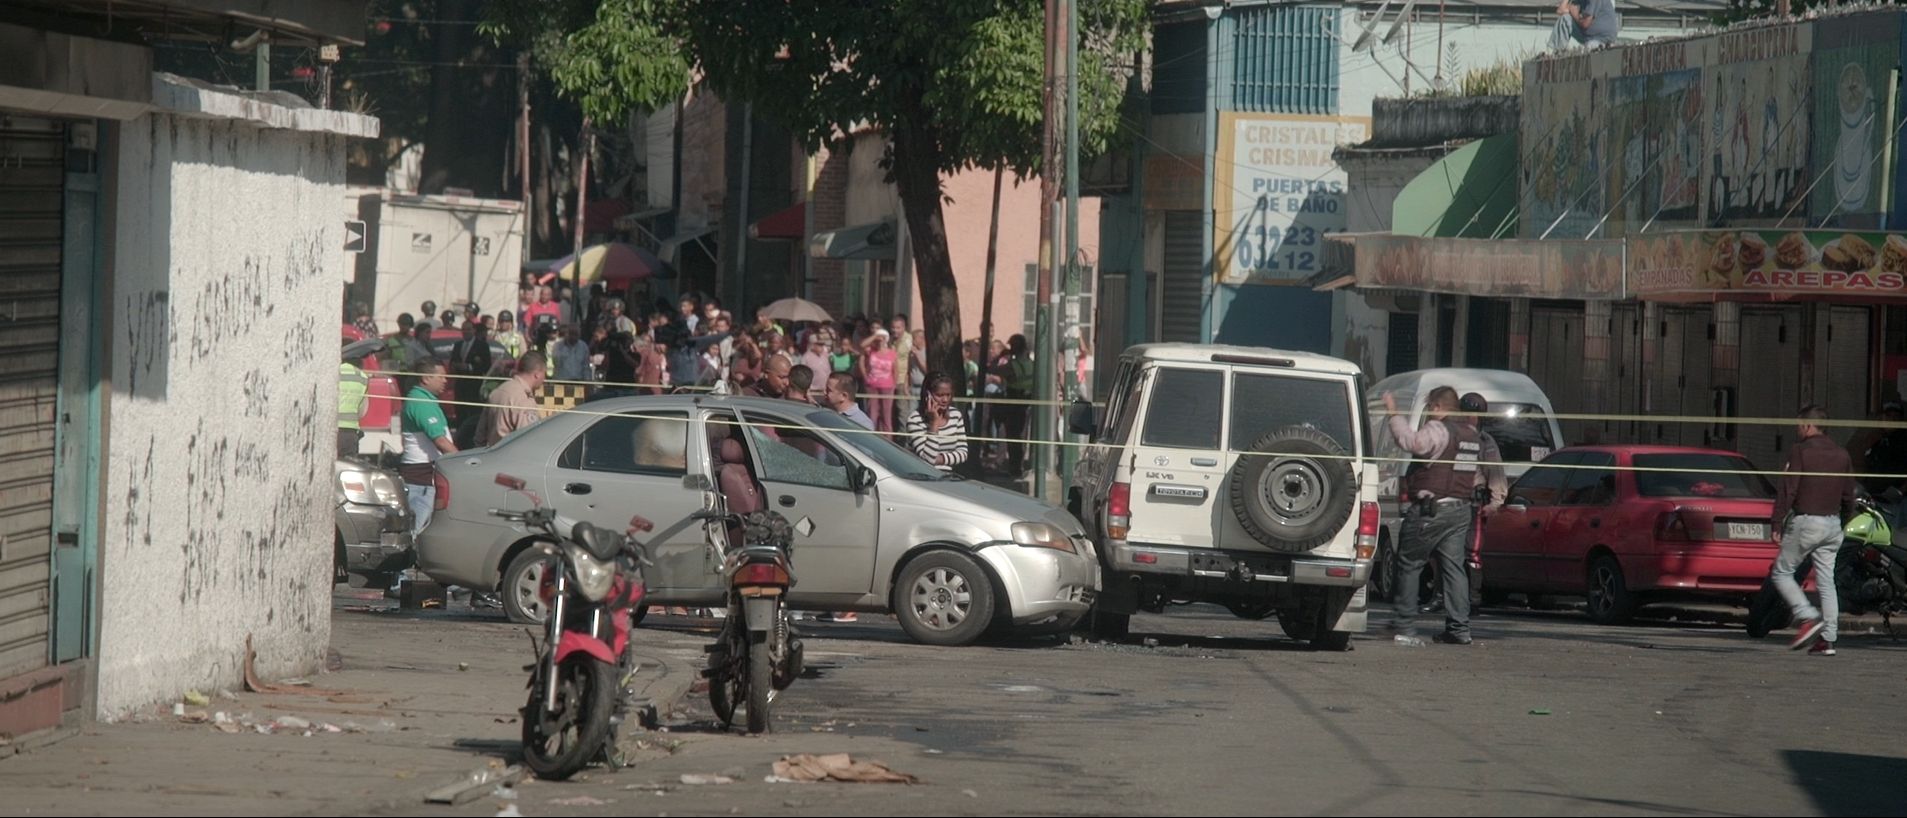 LA RANcON 20 Caracas Venezuela fusillade apres une tentative de kidnapping c Little Big Story 1